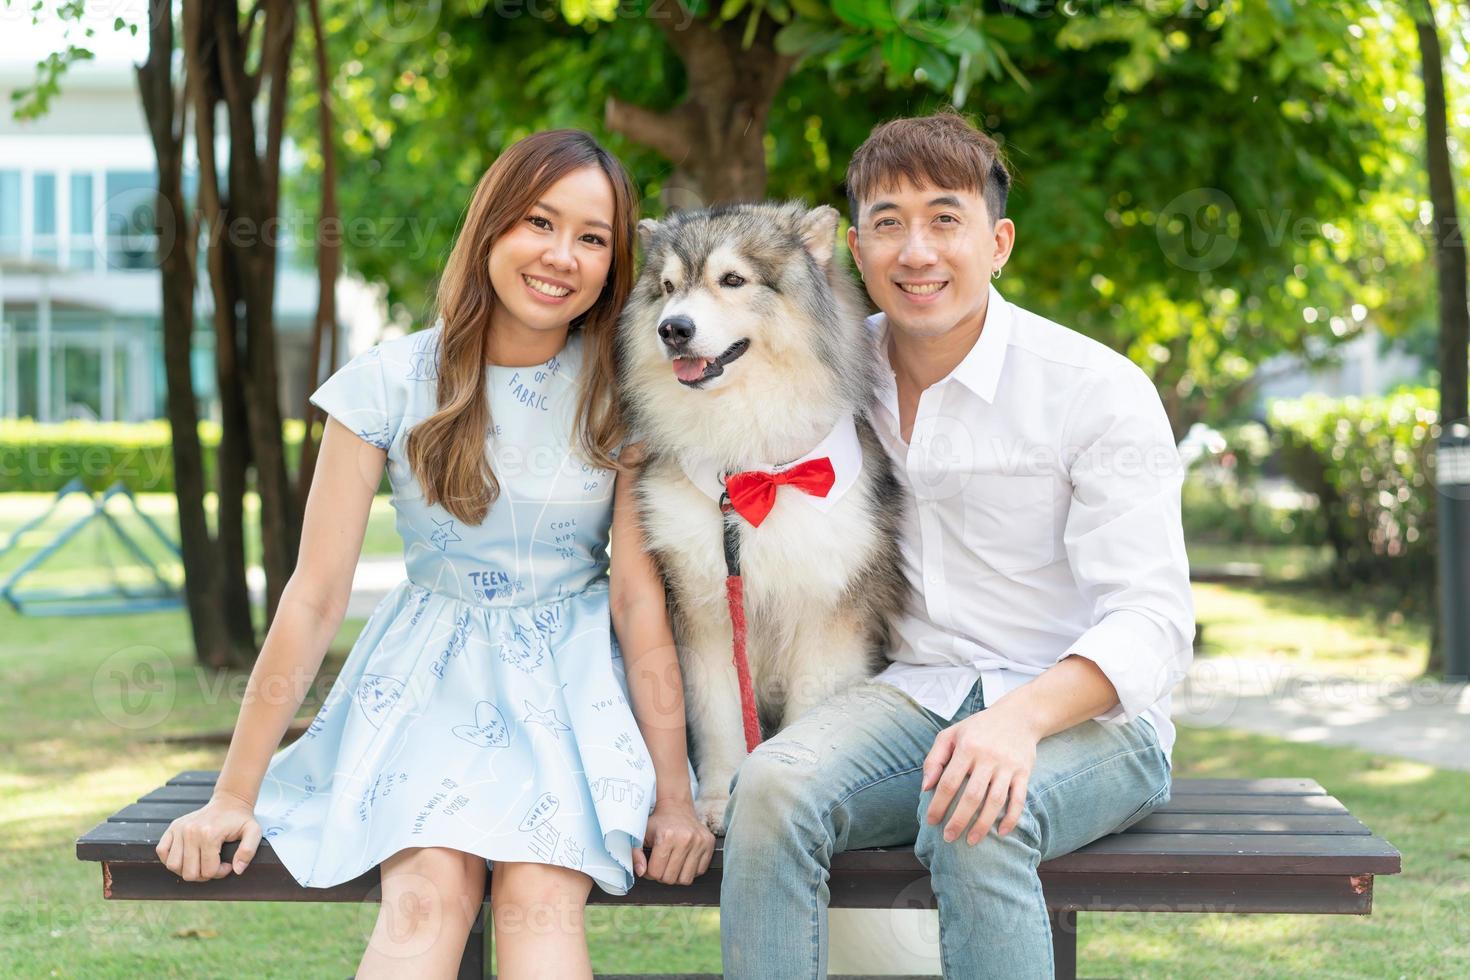 amor de pareja asiática con perro foto